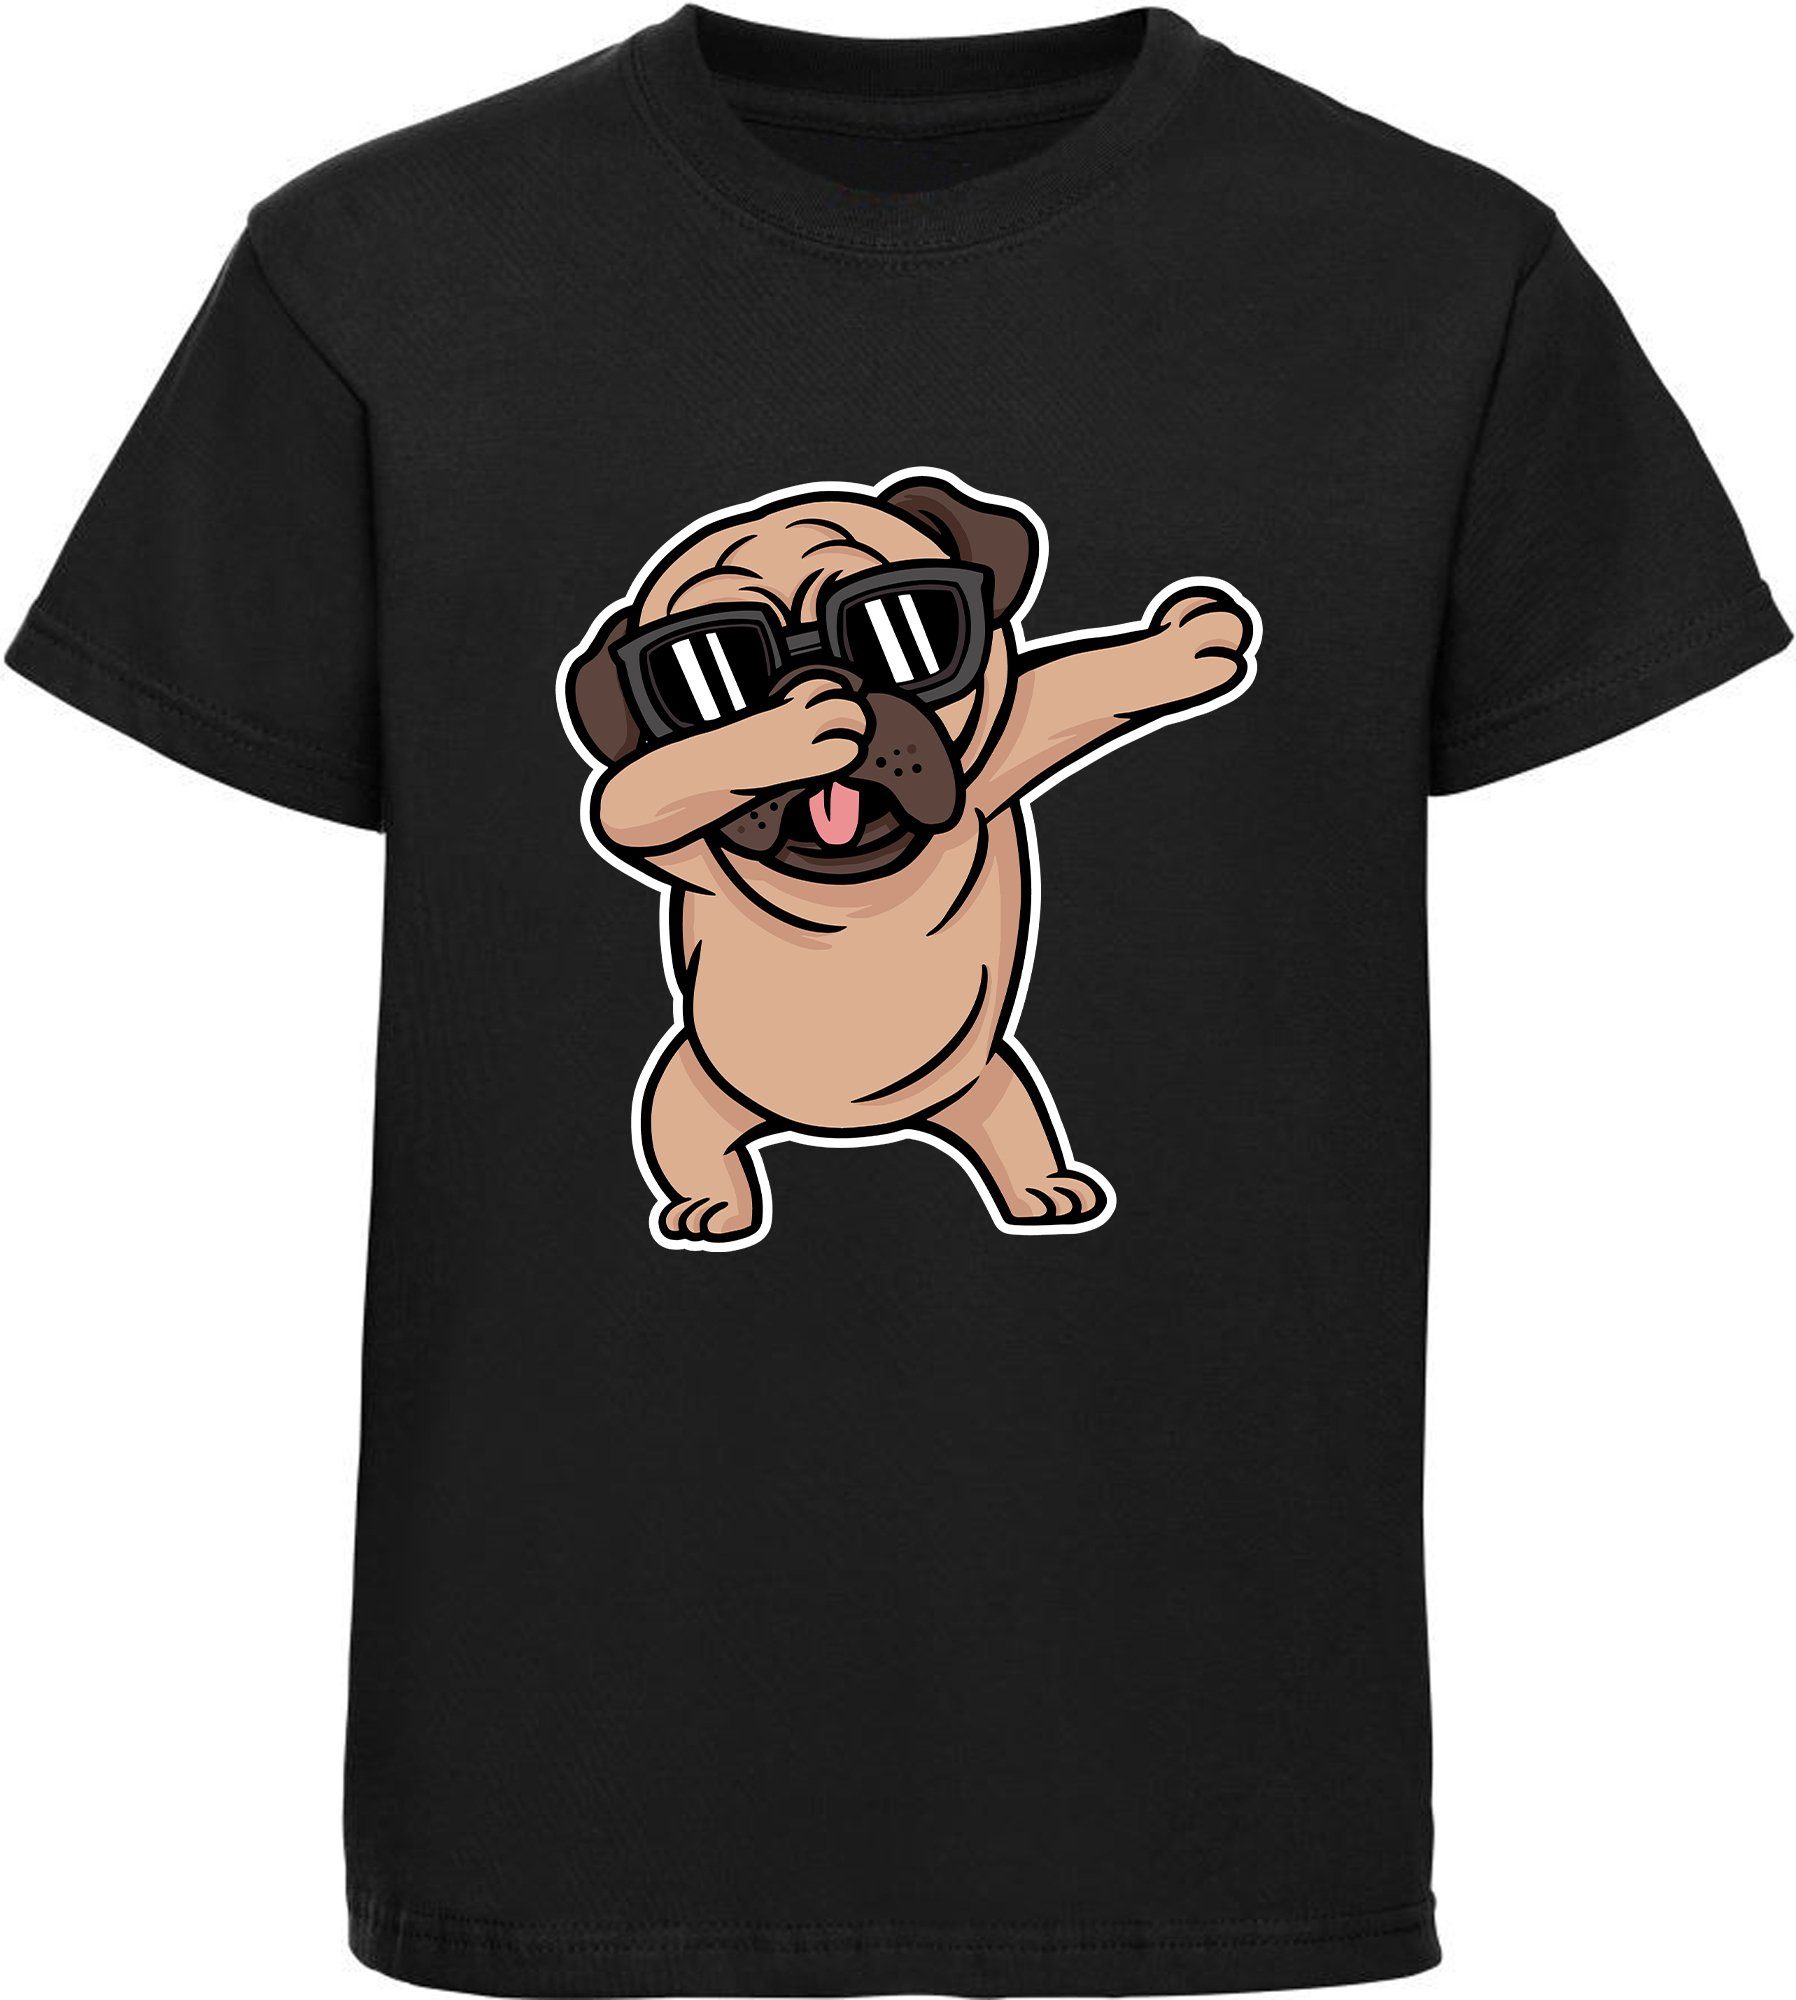 MyDesign24 Print-Shirt Kinder Hunde T-Shirt bedruckt - dab tanzender Hund Baumwollshirt mit Aufdruck, i238 schwarz